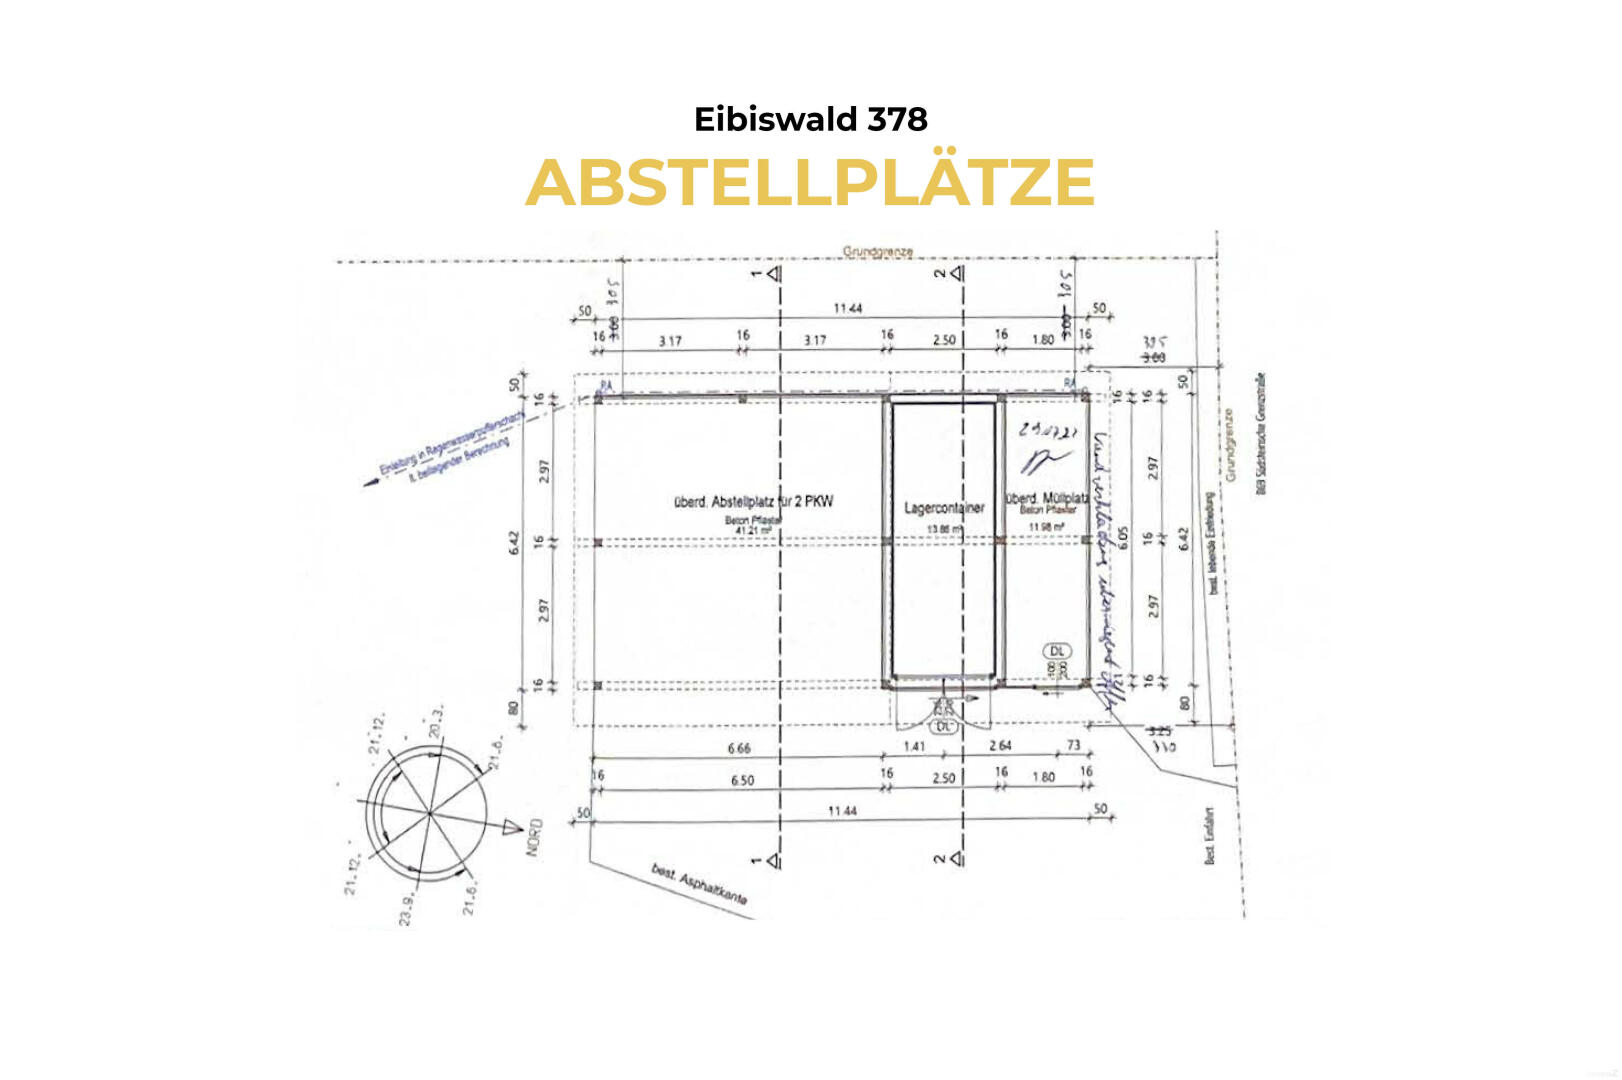 Haus zu kaufen: Eibiswald, 8552 Eibiswald - 11 Eibiswald 378 - Abstellplätze